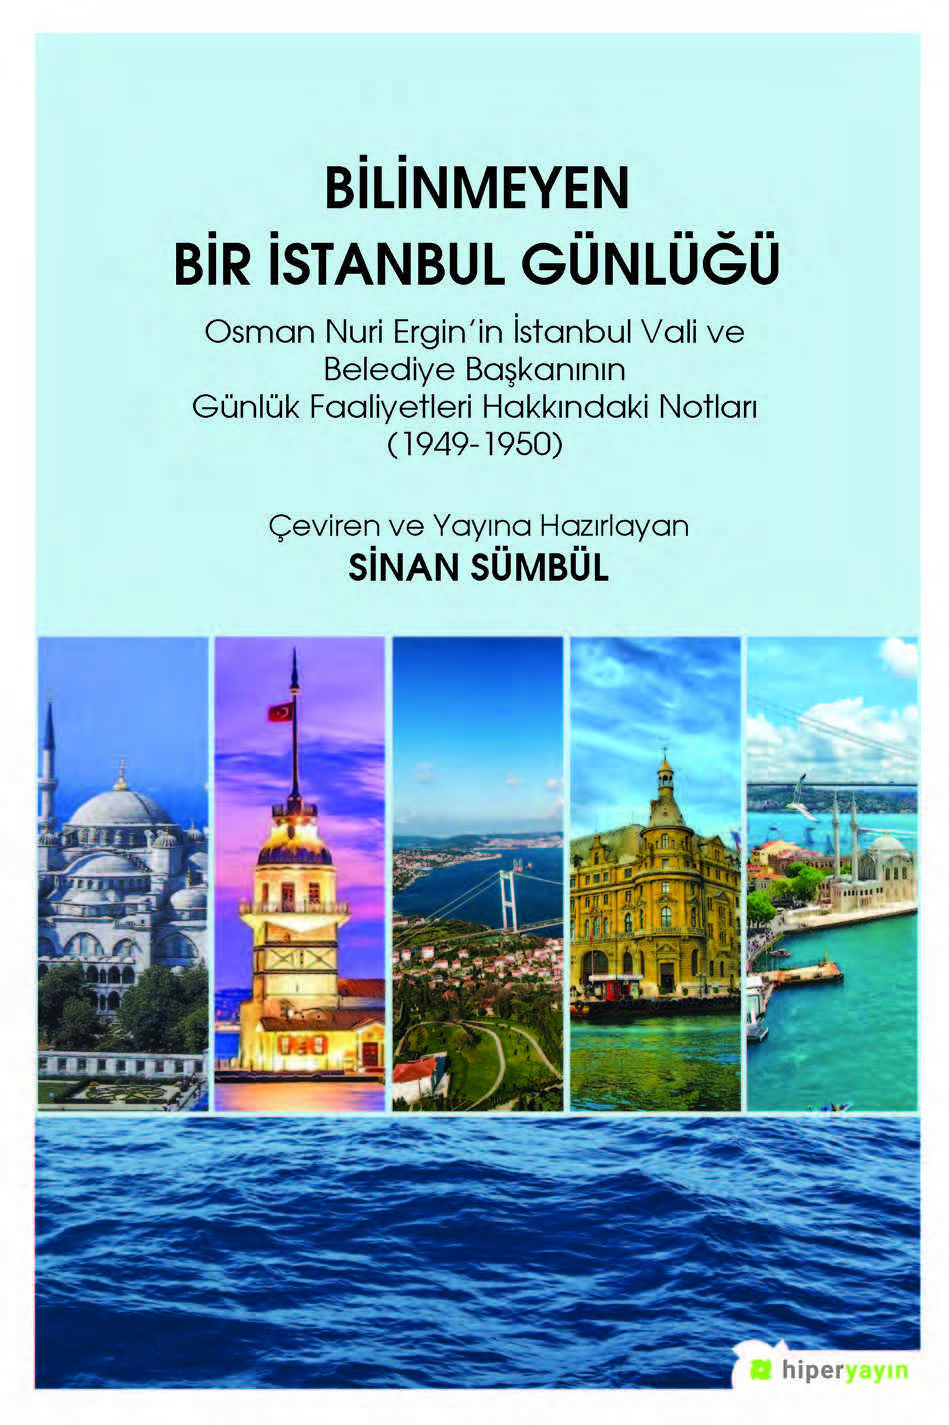 Bilinmeyen Bir İstanbul Günlüğü - Osman Nuri Ergin’in İstanbul Vali ve Belediye Başkanının Günlük Faaliyetleri Hakkındaki Notları (1949-1950)